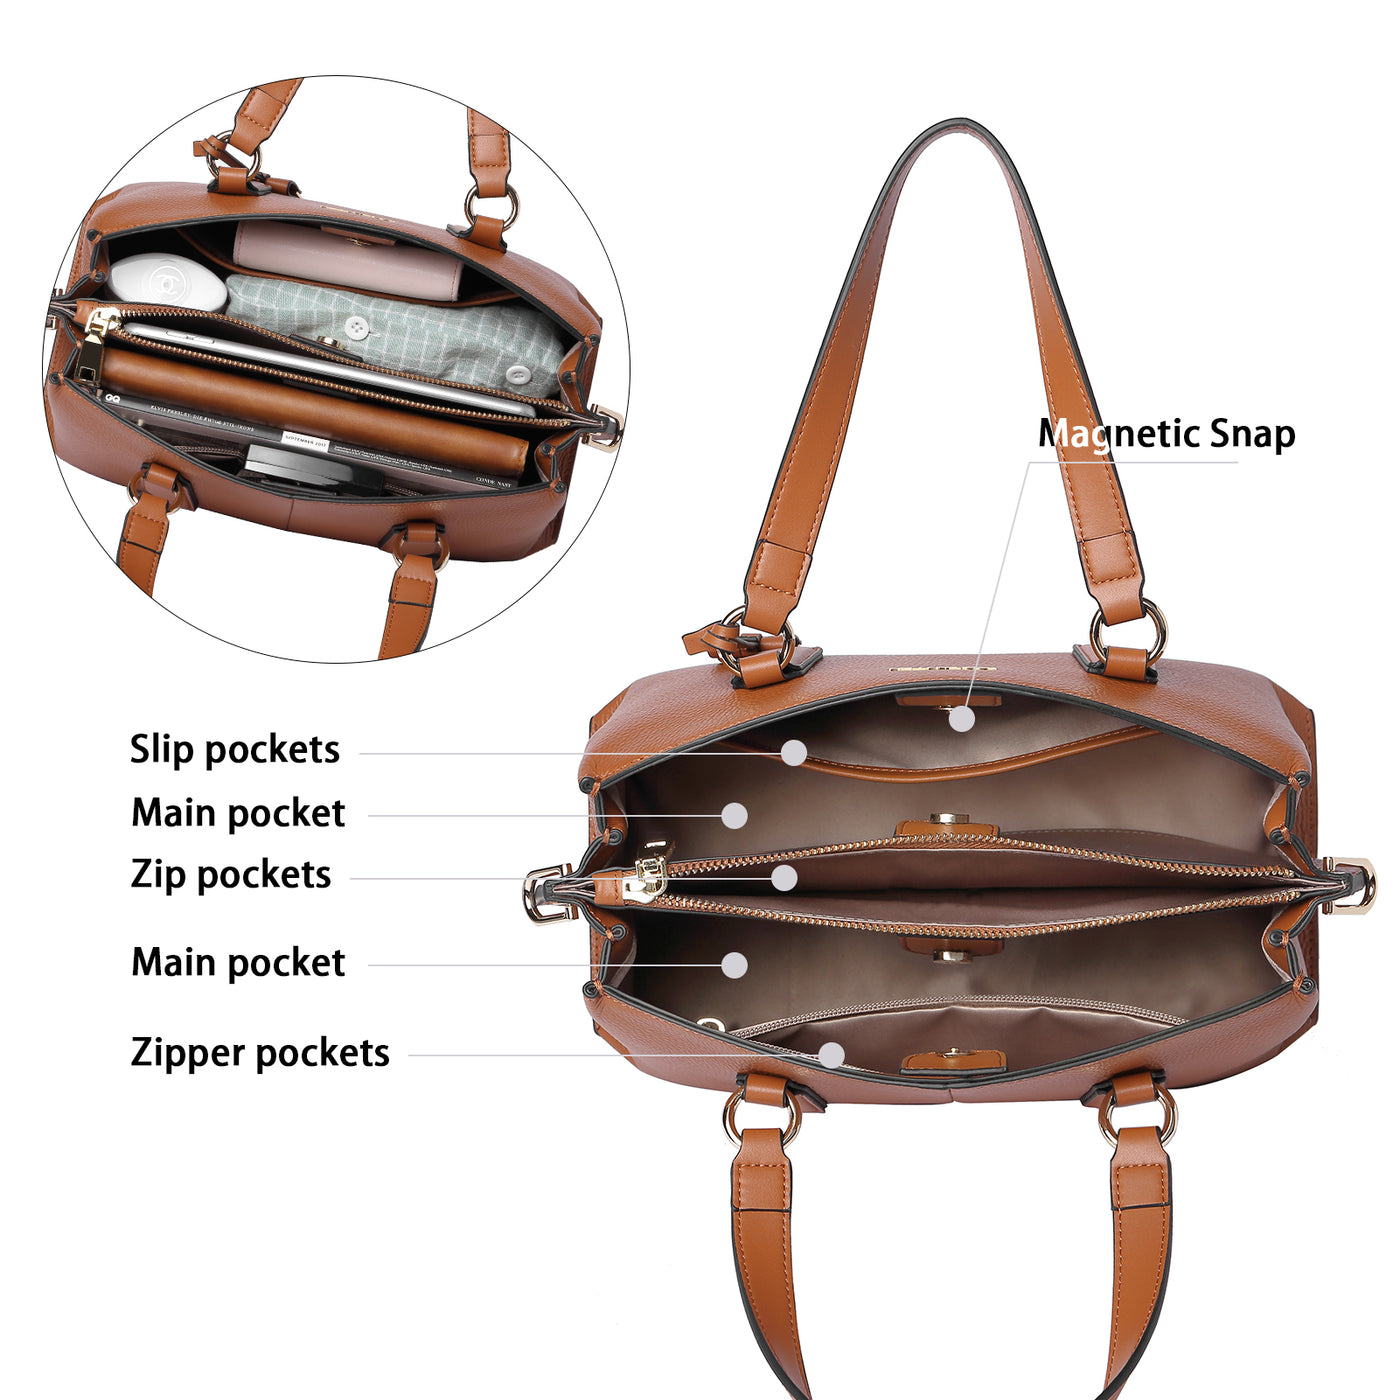 BOSTANTEN Women Leather Handbags Designer Tote Purses Ladies Fashion Satchel Top Handle Bags Triple Compartment - BOSTANTEN